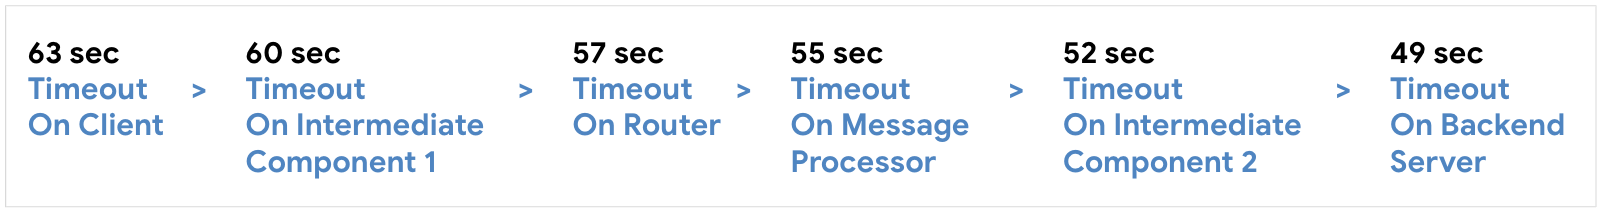 Configura il timeout sul client a 63 secondi, quindi il componente intermedio 1 a 60 secondi, il router a 57 secondi, il server di messaggistica a 55 secondi, il componente intermedio 2 a 52 secondi, il server di backend a 59 secondi